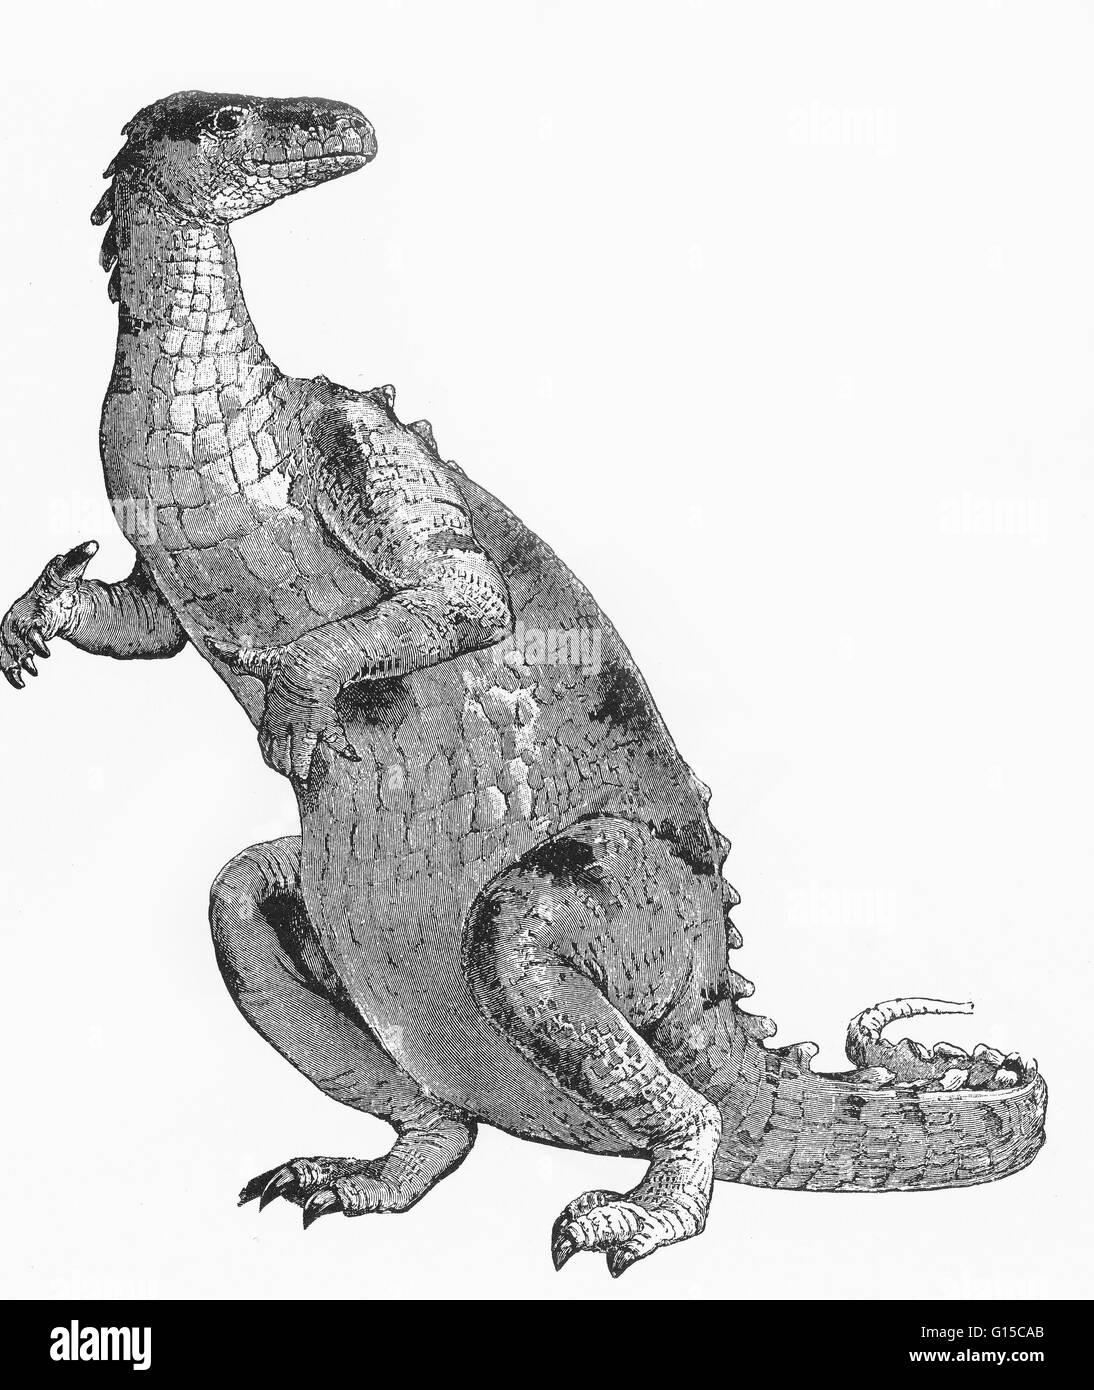 La parola dinosauro fu coniato da Richard Owen nel 1841, deinos (terribili) + sauros (lucertola) che descrivono vari rettili estinti gli ordini Saurischia Ornithischia e che fiorirono durante il Mesozoico. Erano dinosauri carnivori erbivori o, Foto Stock